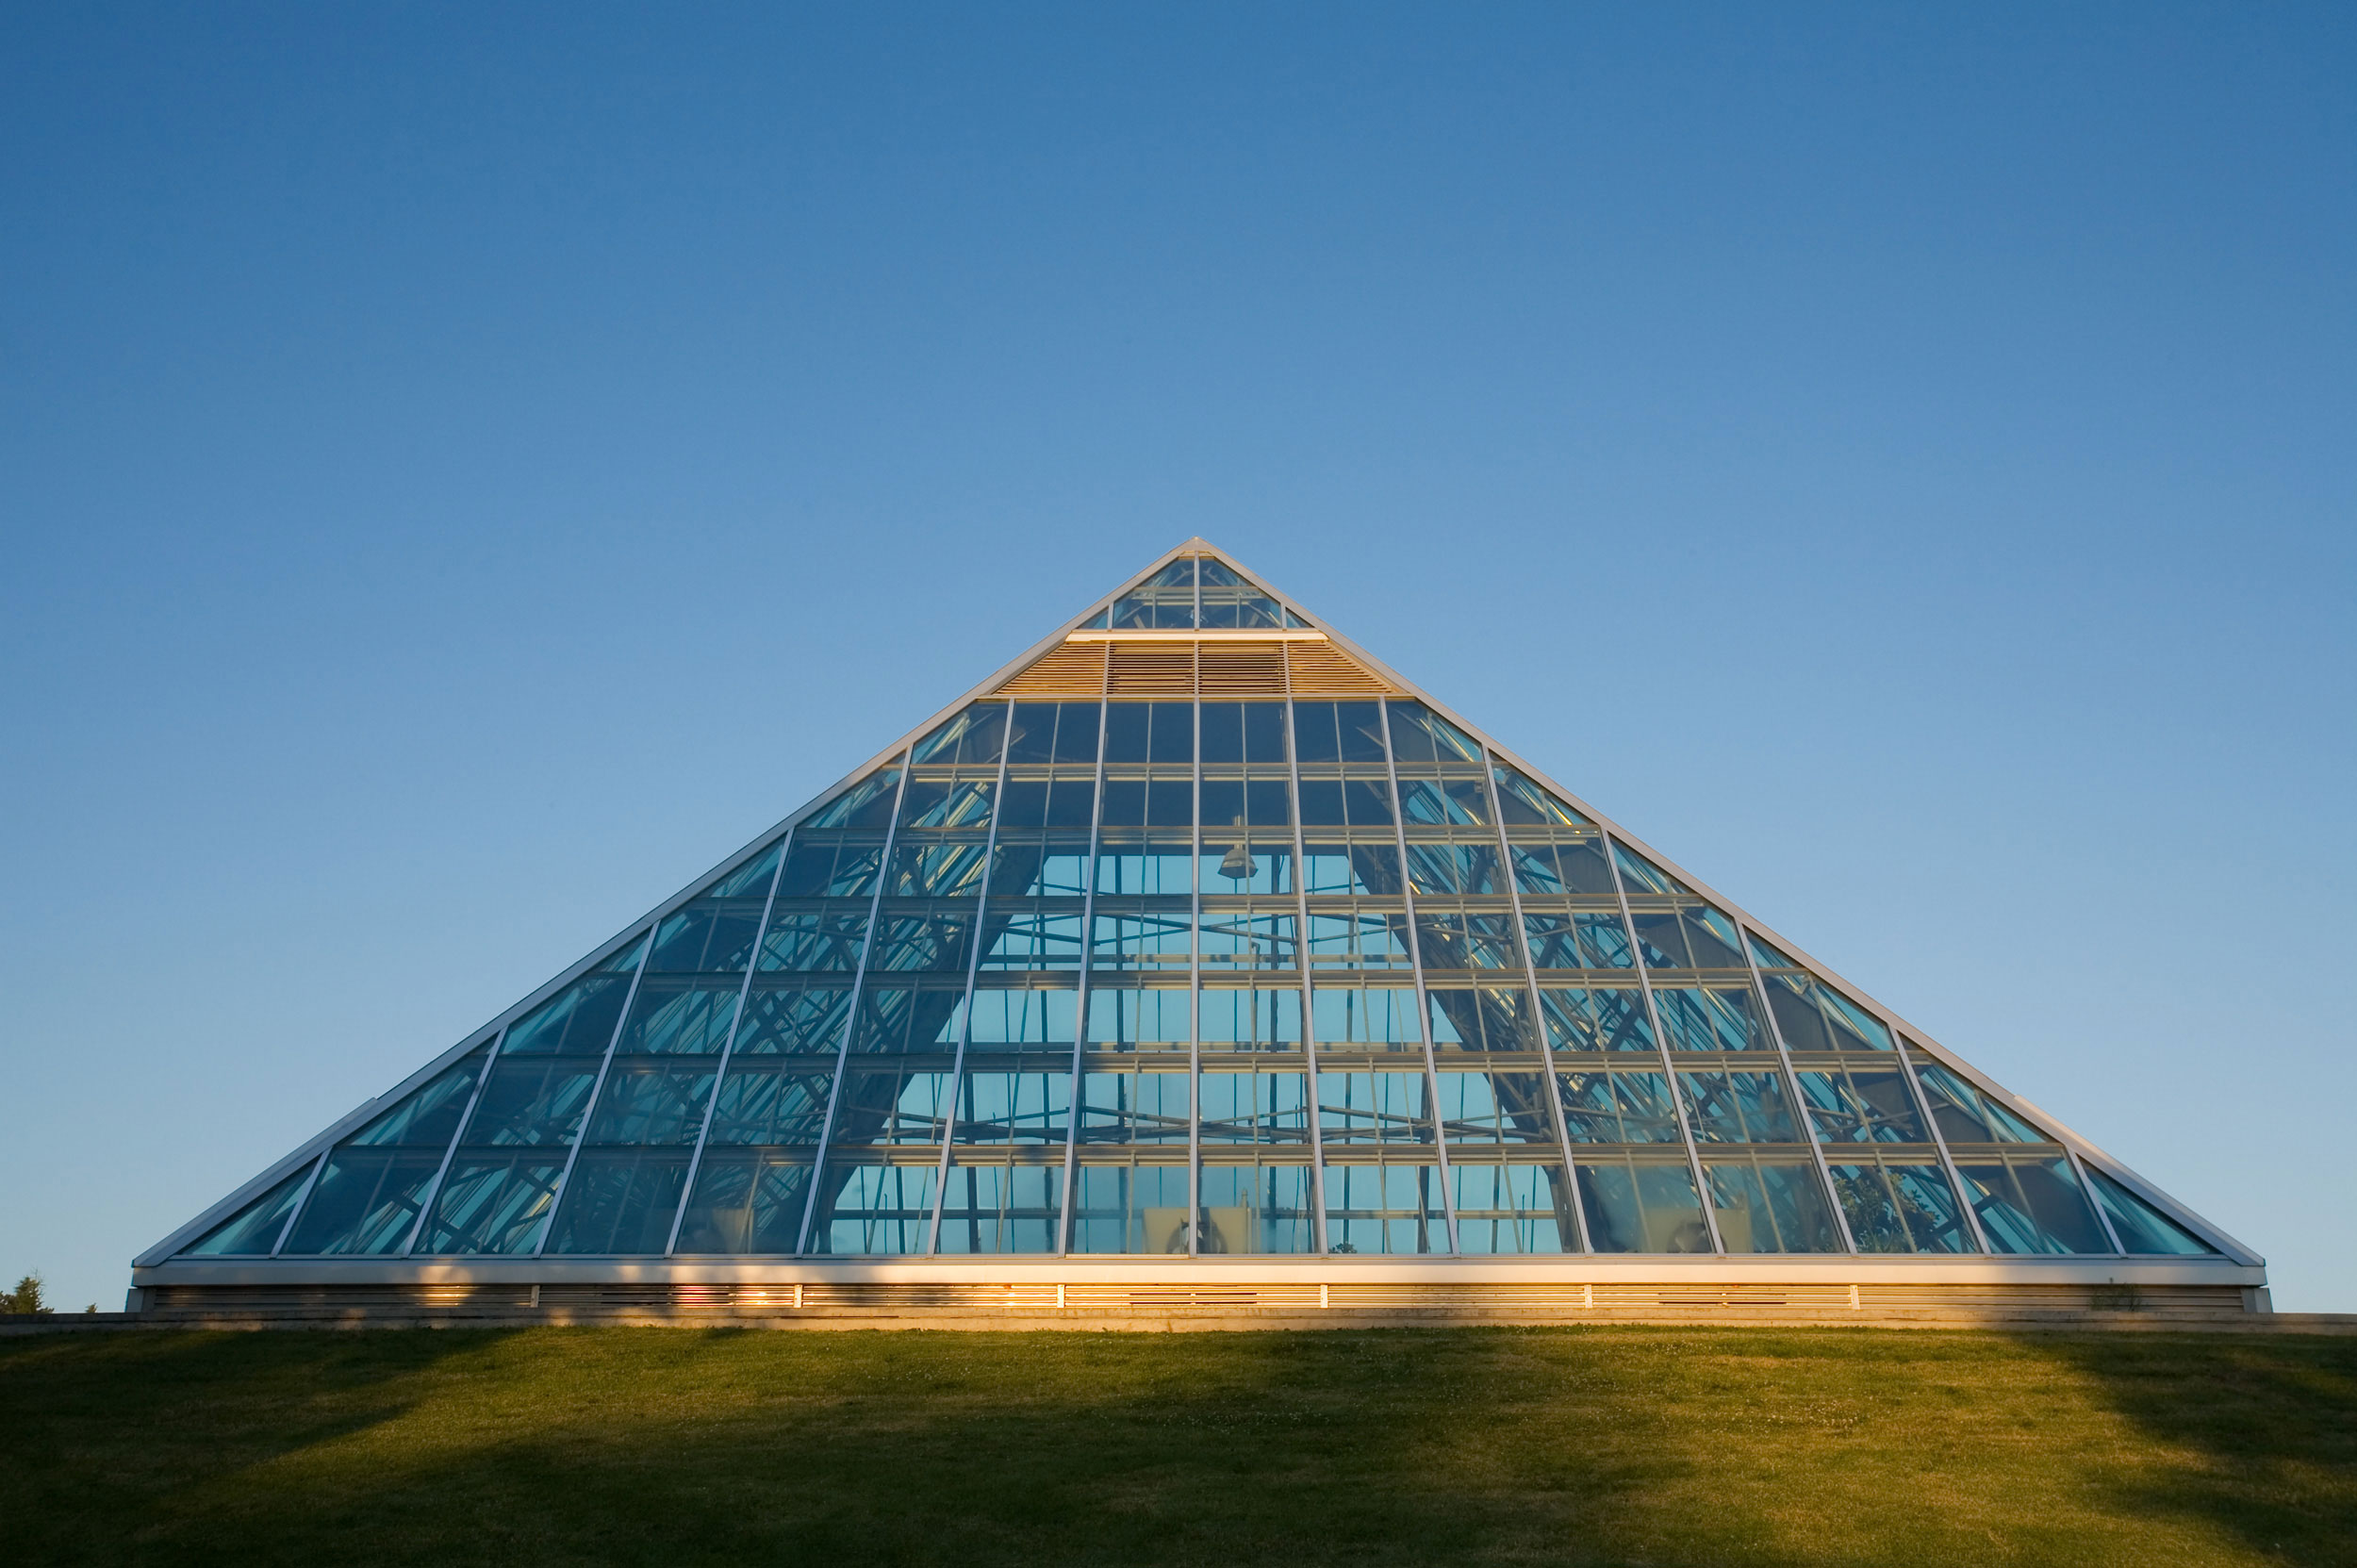 Single pyramid of Muttart Conservatory in Edmonton, Alberta